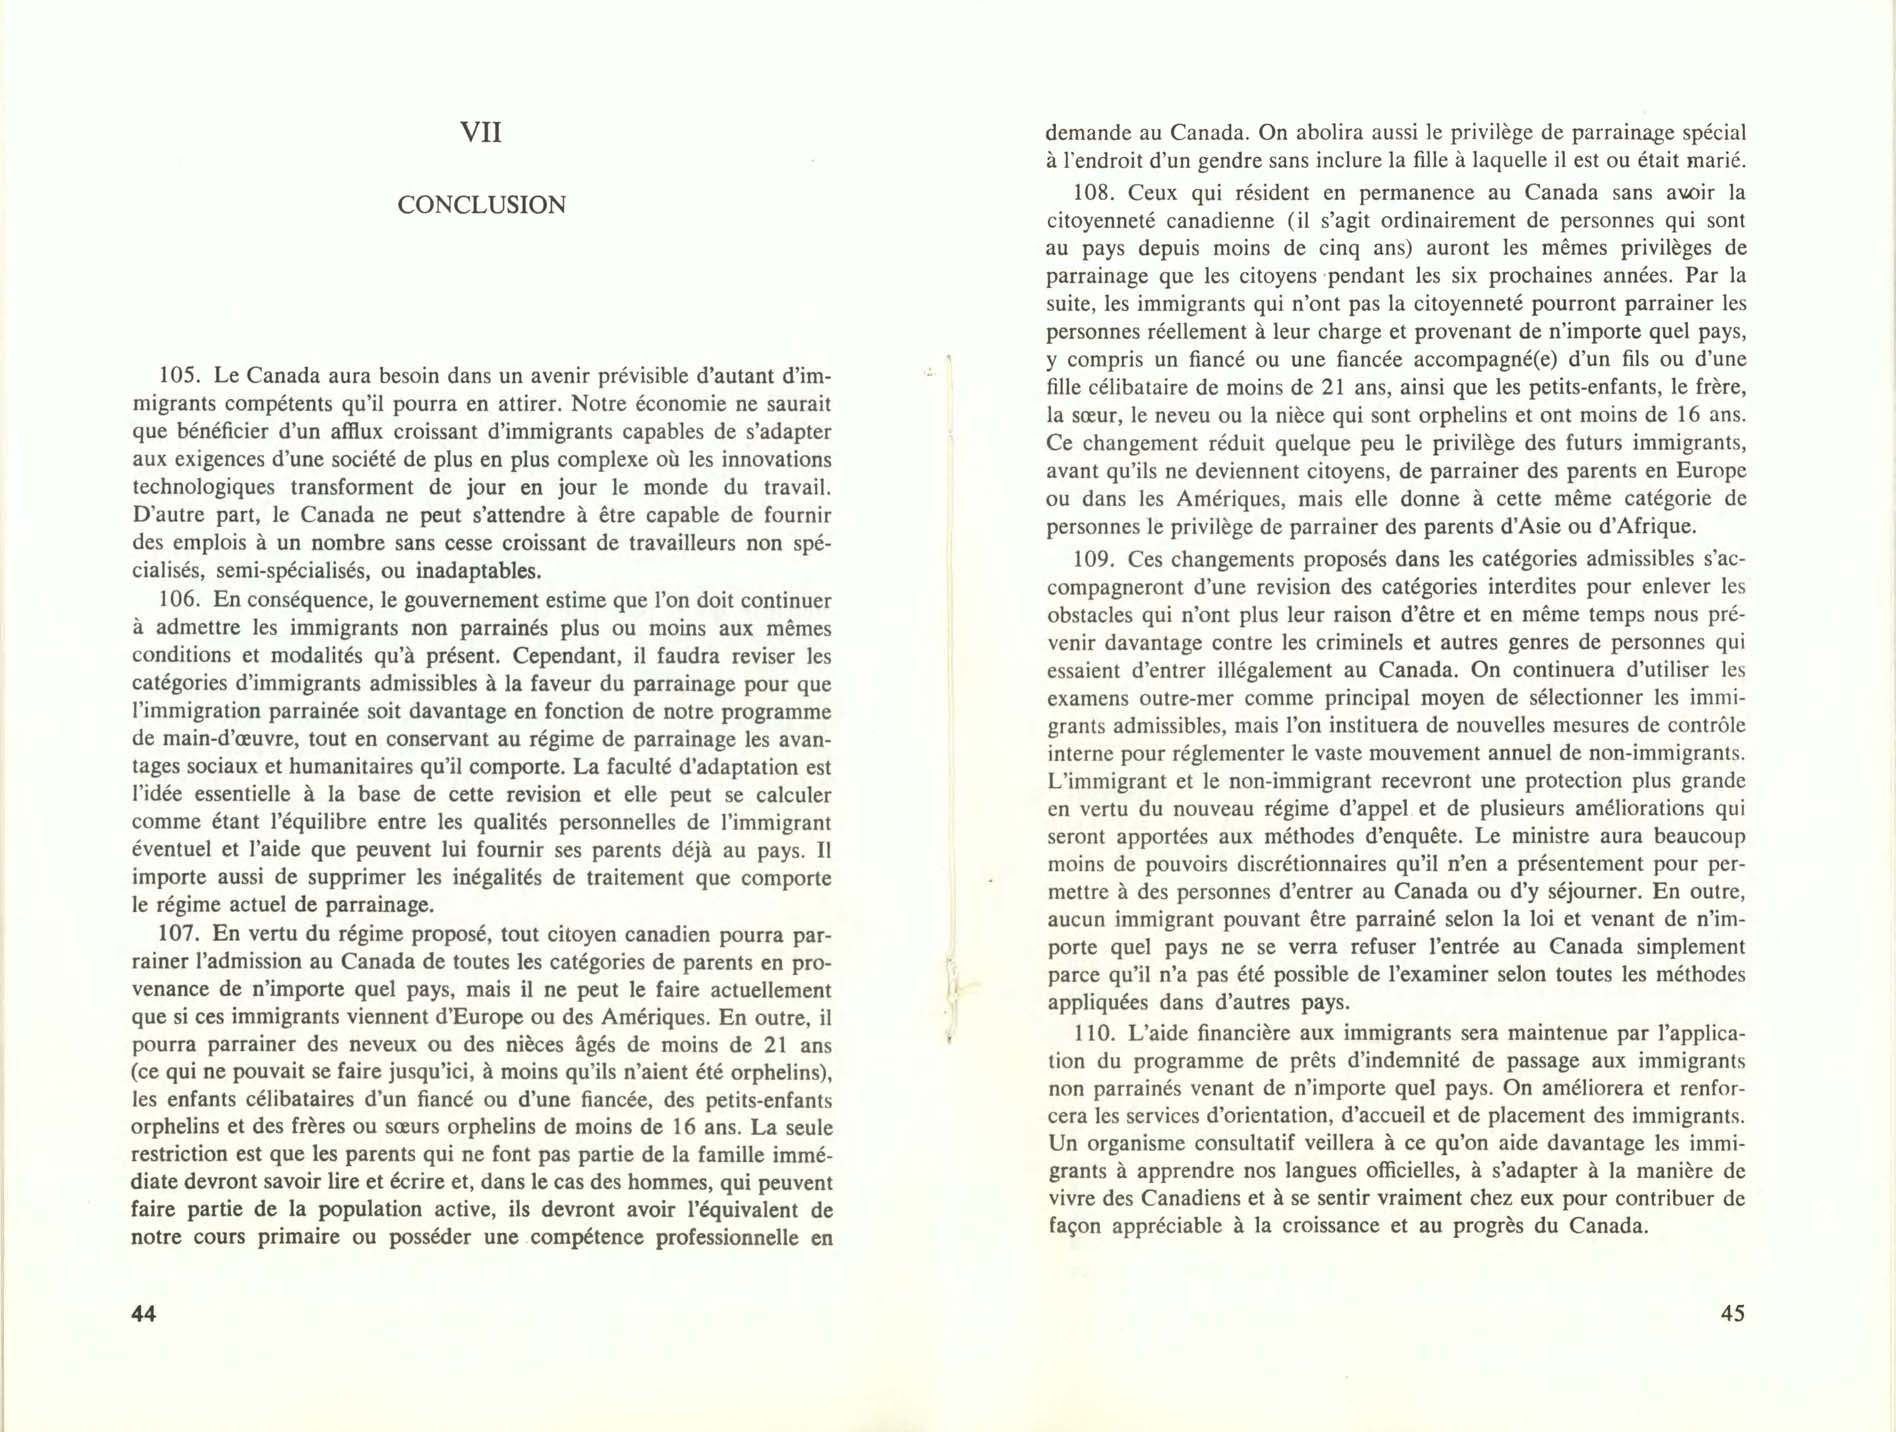 Page 44, 45 Livre Blanc sur l’immigration, 1966